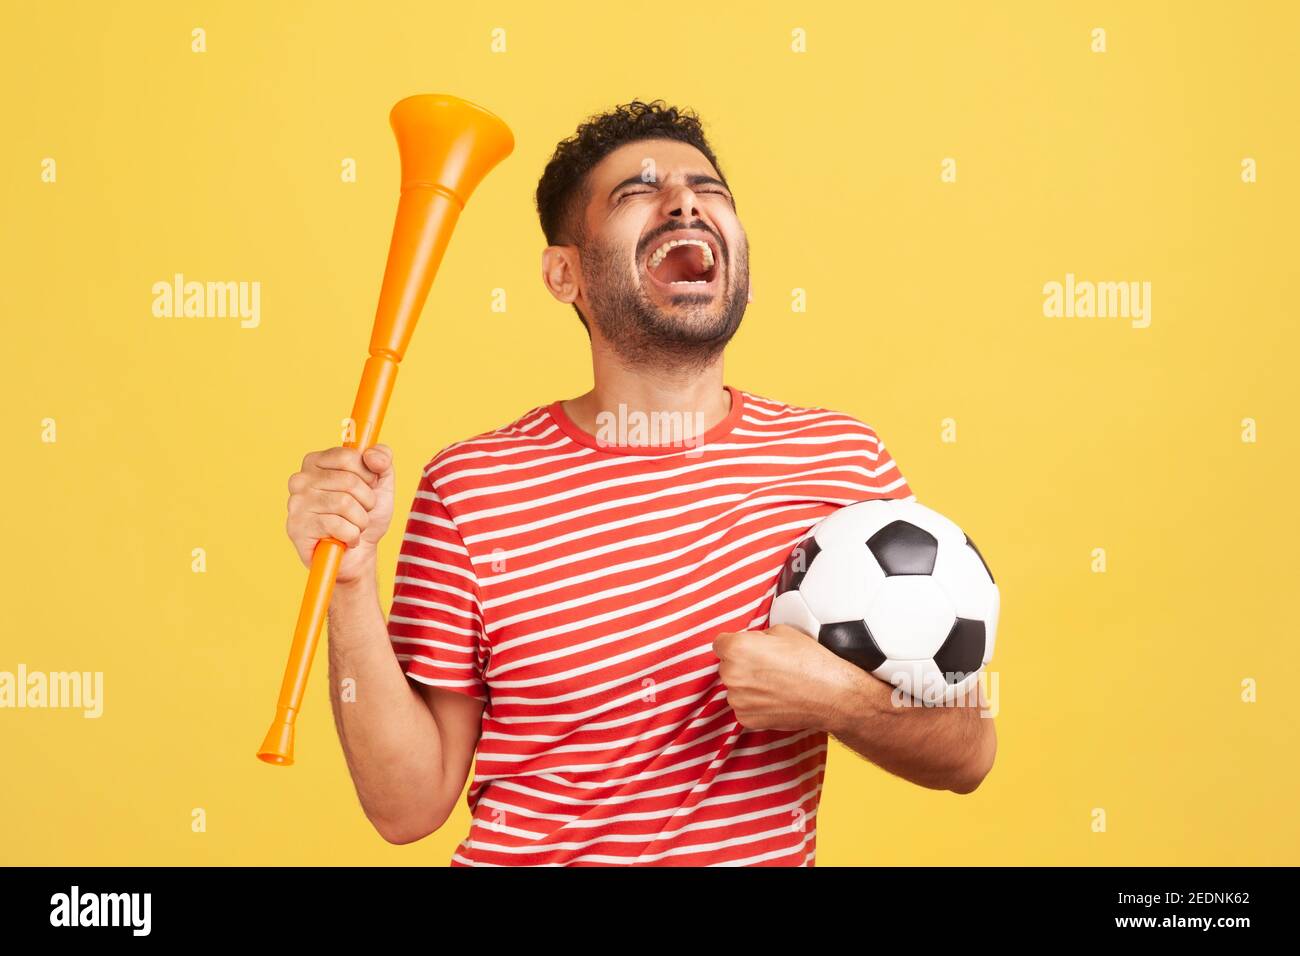 Extrem glücklicher bärtiger Mann in rot gestreiftem T-Shirt mit Horn und  schwarz-weißem Fußball, der den Sieg der Lieblings-Fußballmannschaft  feiert. Indoo Stockfotografie - Alamy